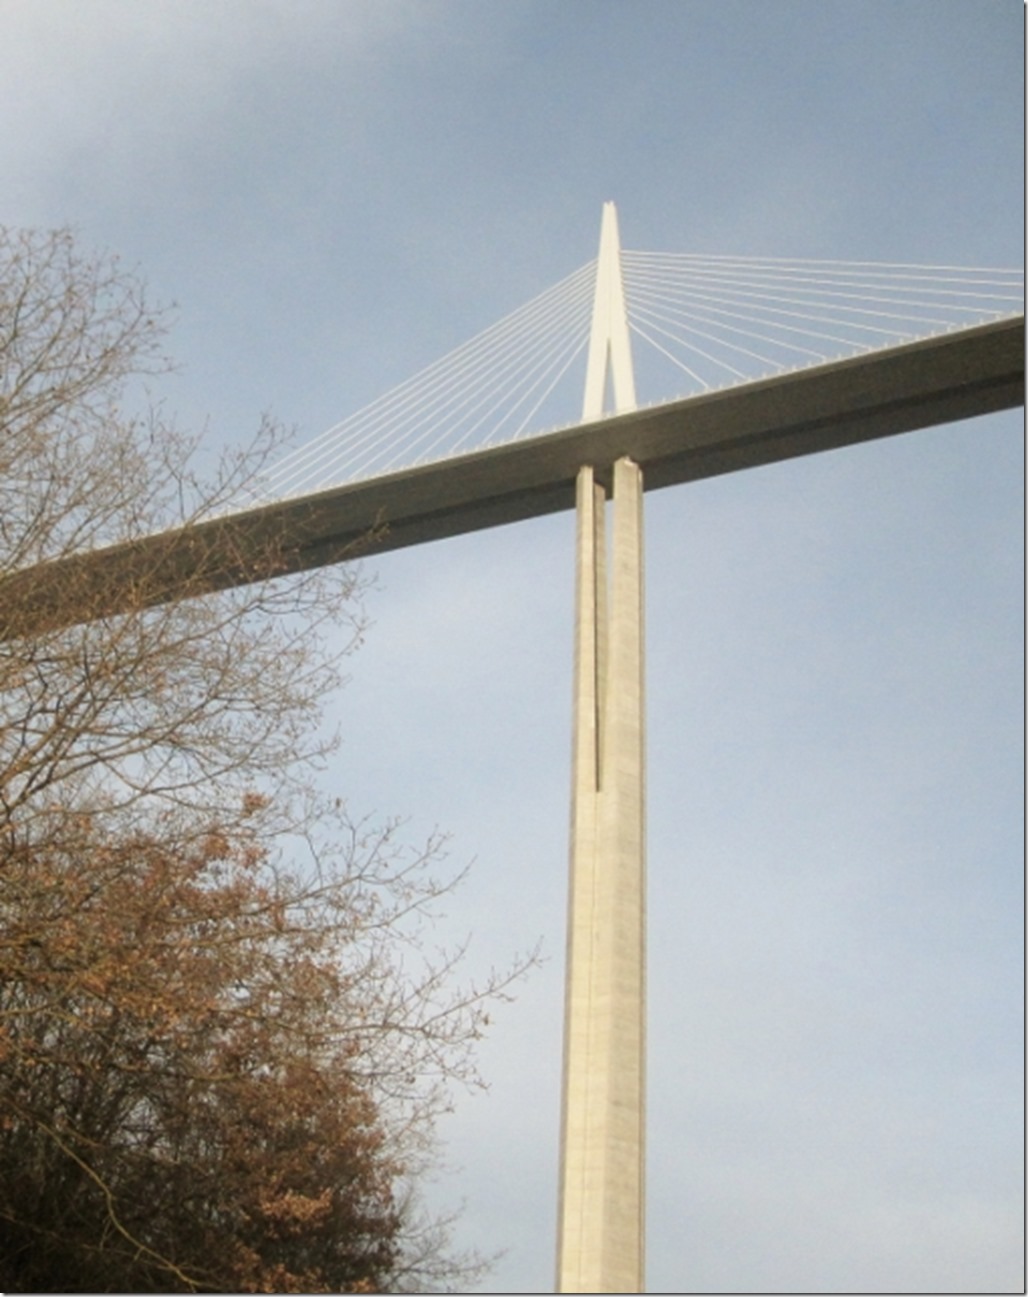 150307 France-Millau Viaduct (26) (508x640)